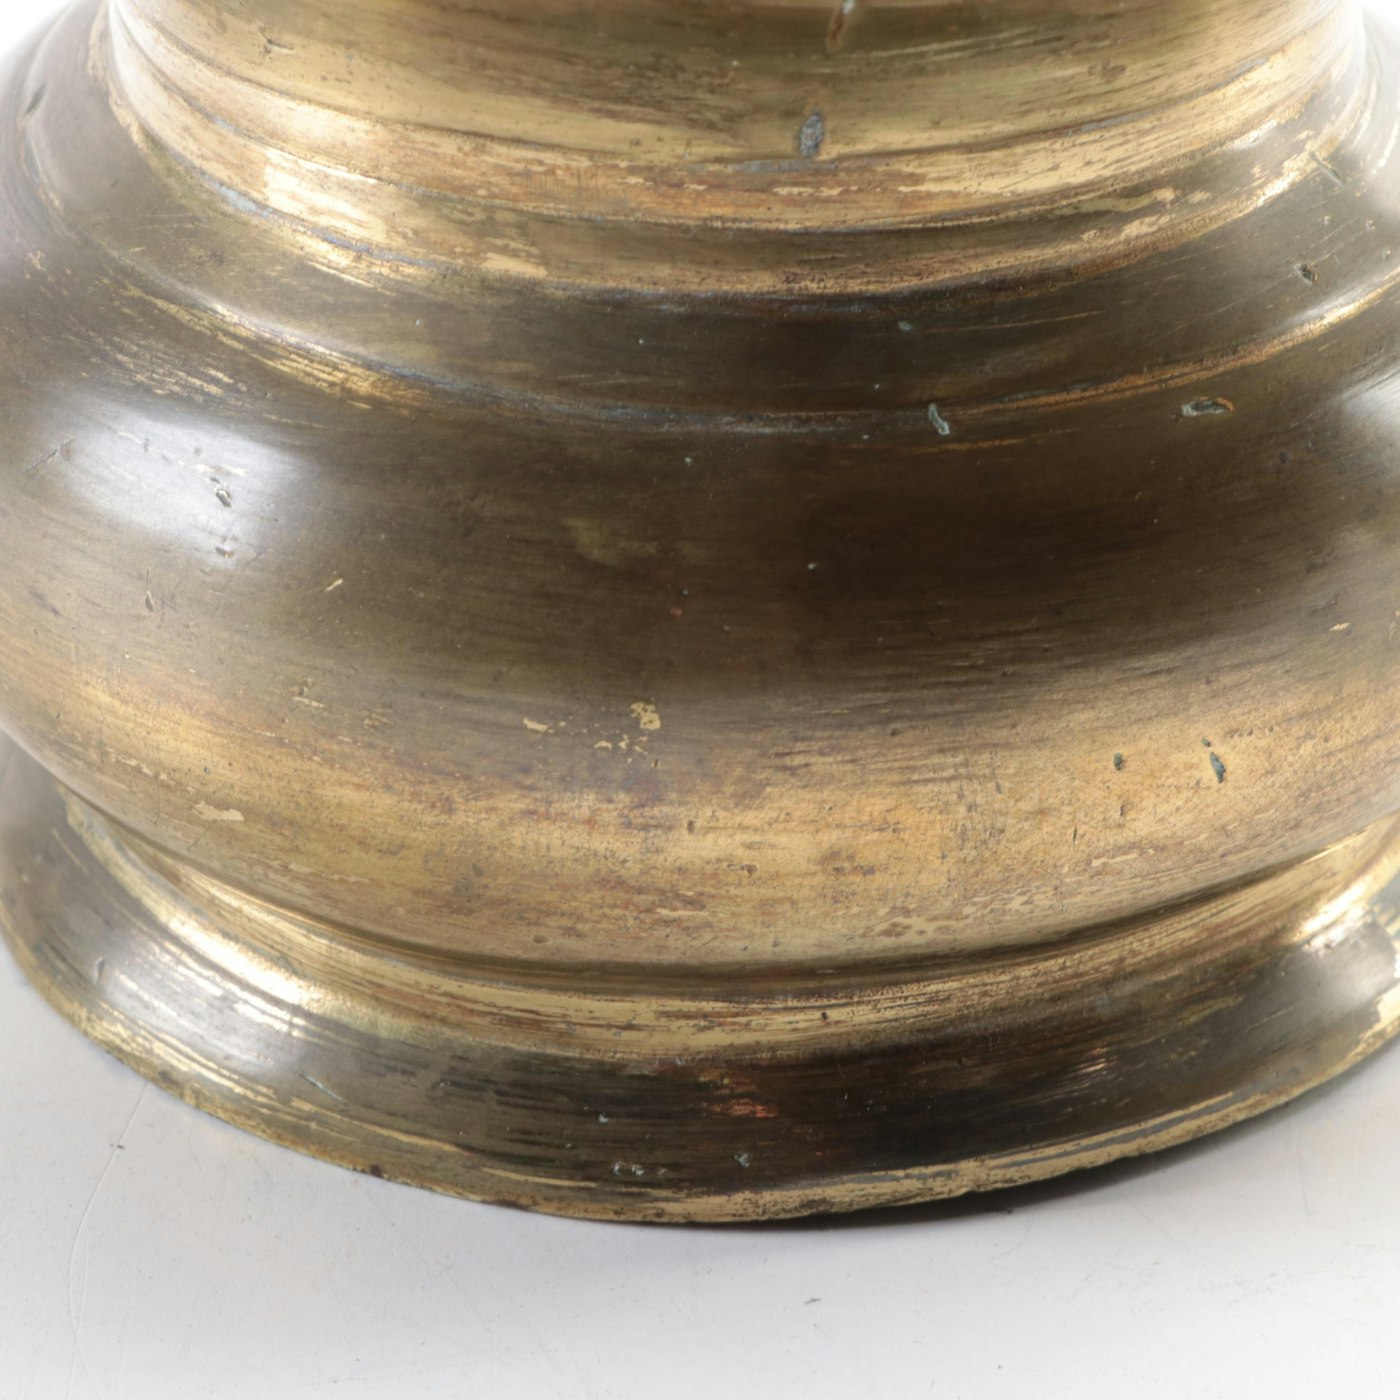 Philippine Brass Spittoon, 19th Century | EBTH